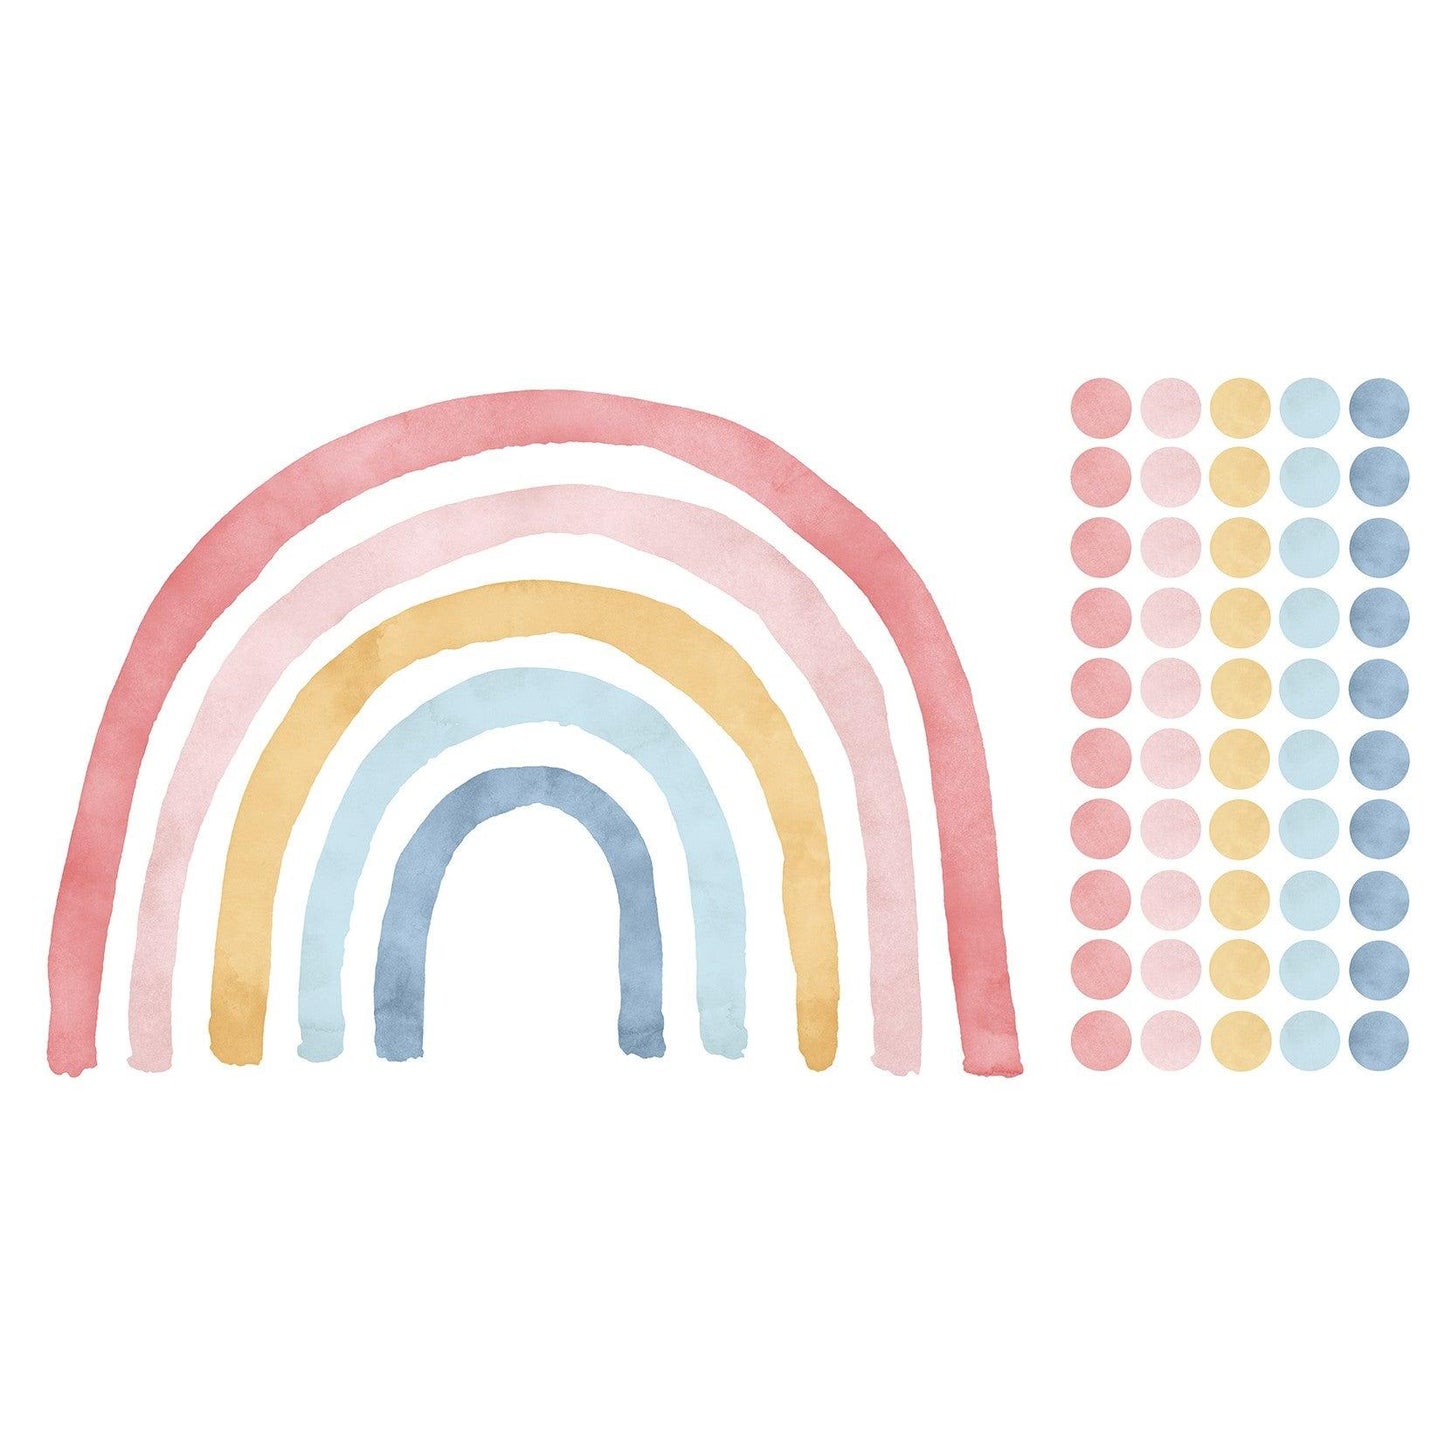 Wandtattoo Kinderzimmer - Regenbogen mit Punkte Pink / Blau